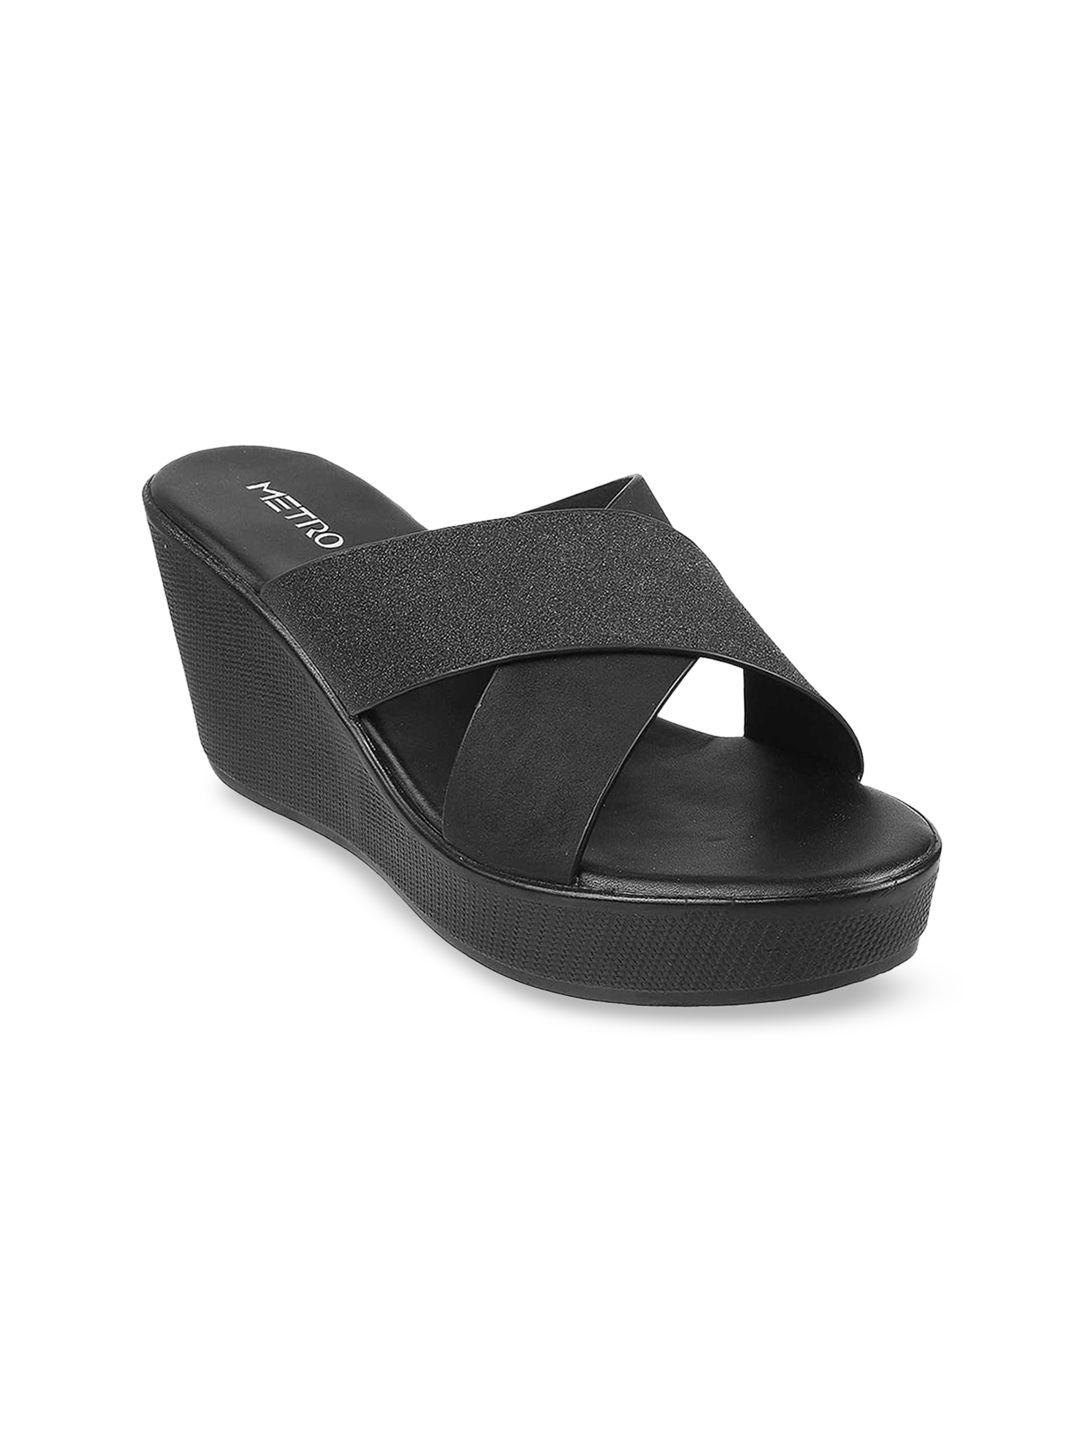 metro women black solid wedge sandals